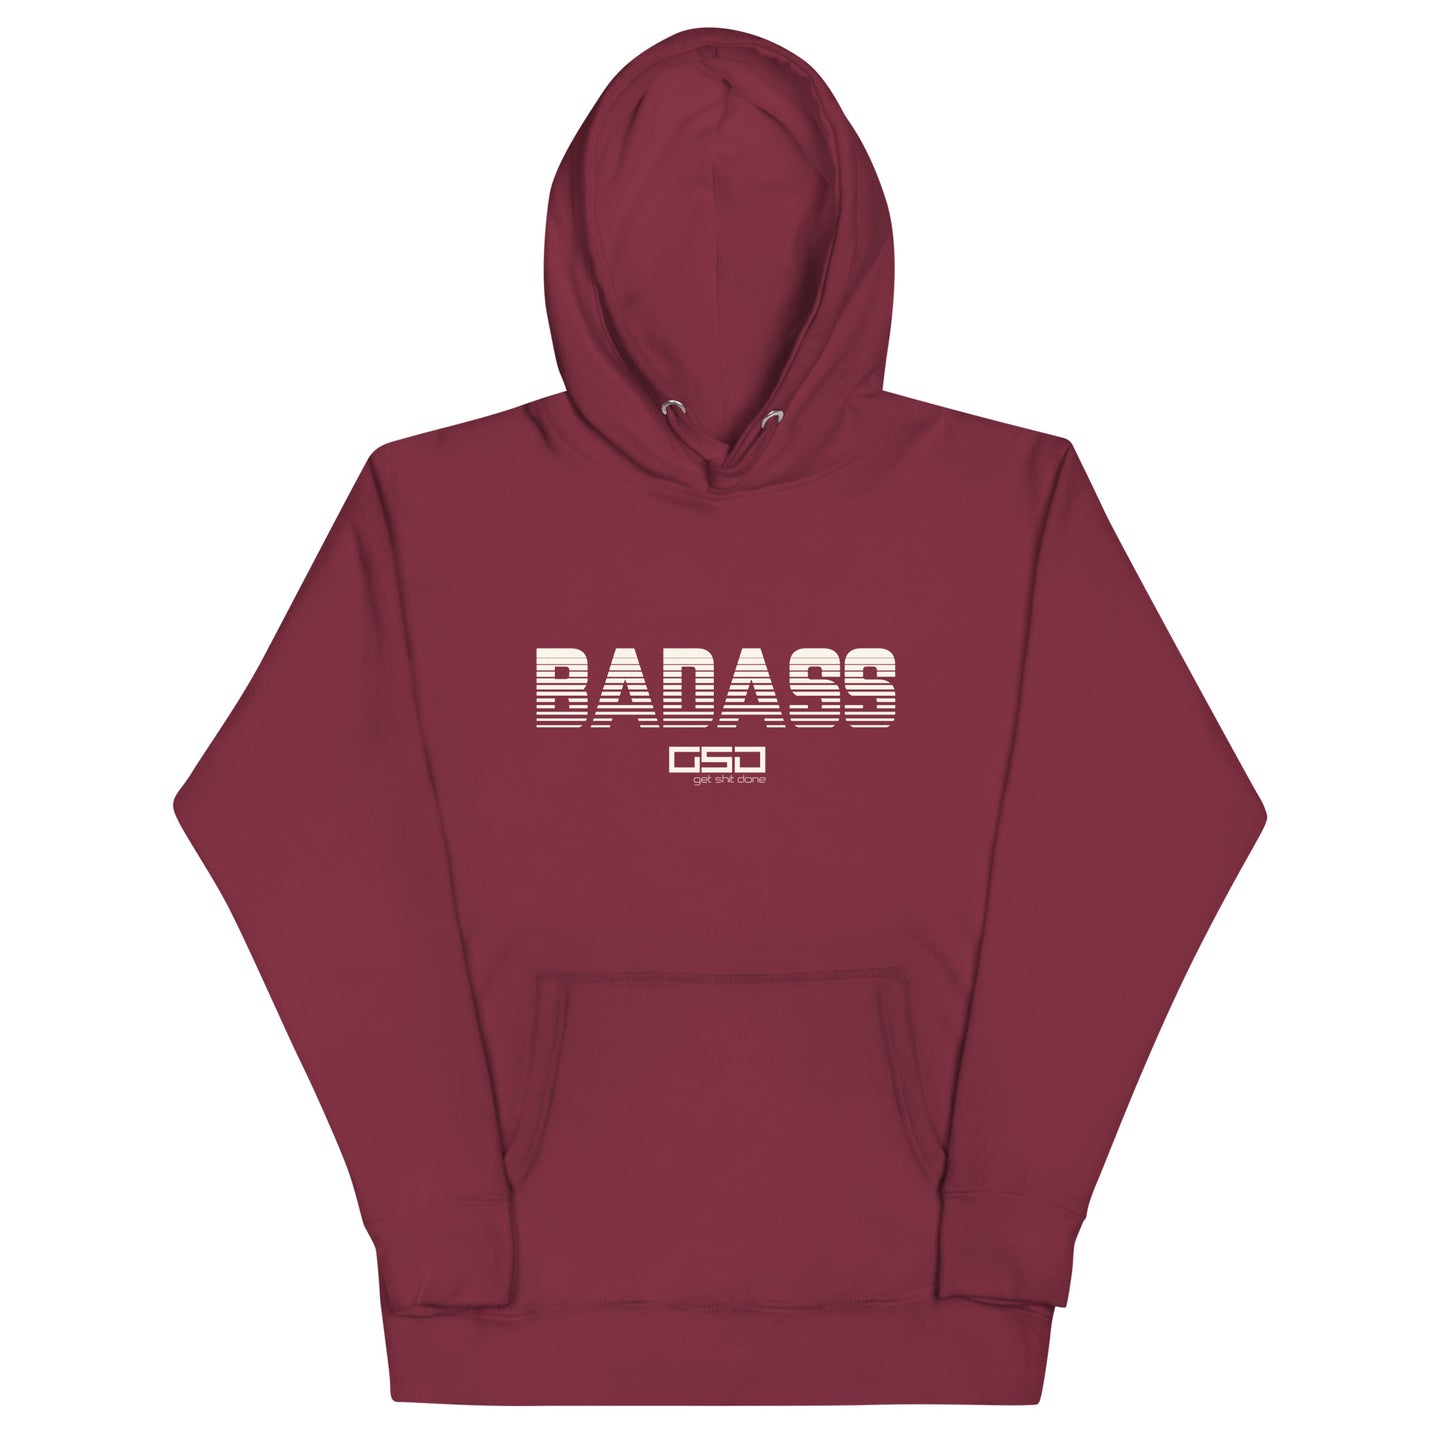 BADASS-Unisex Hoodie